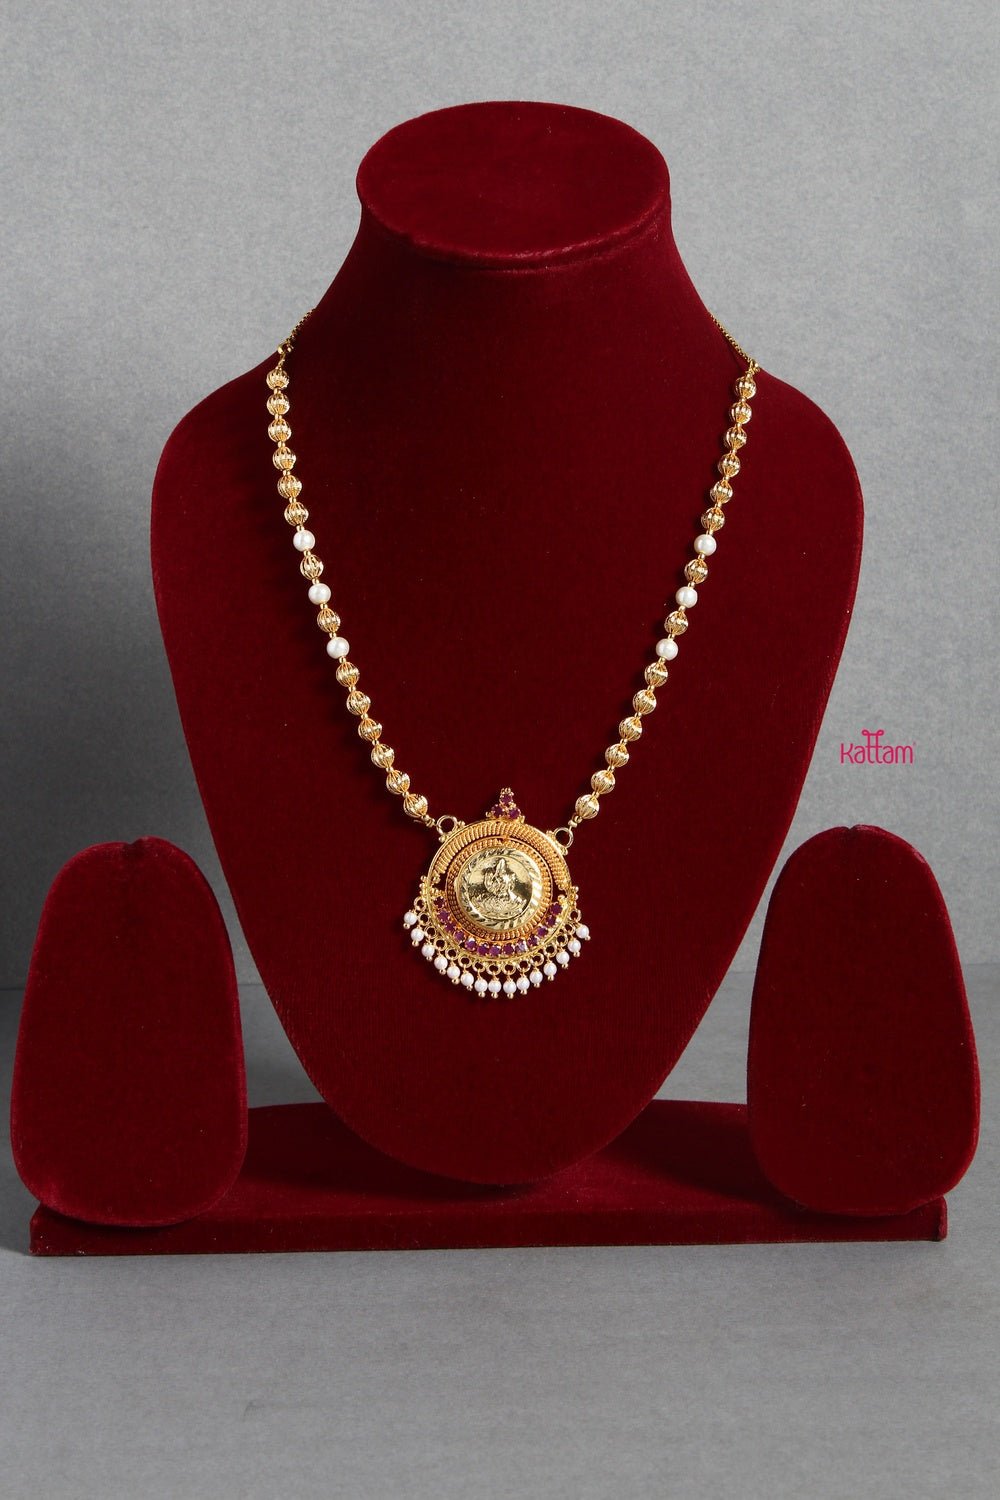 Goldtone Kerala Style Chain (No earring) - N1334